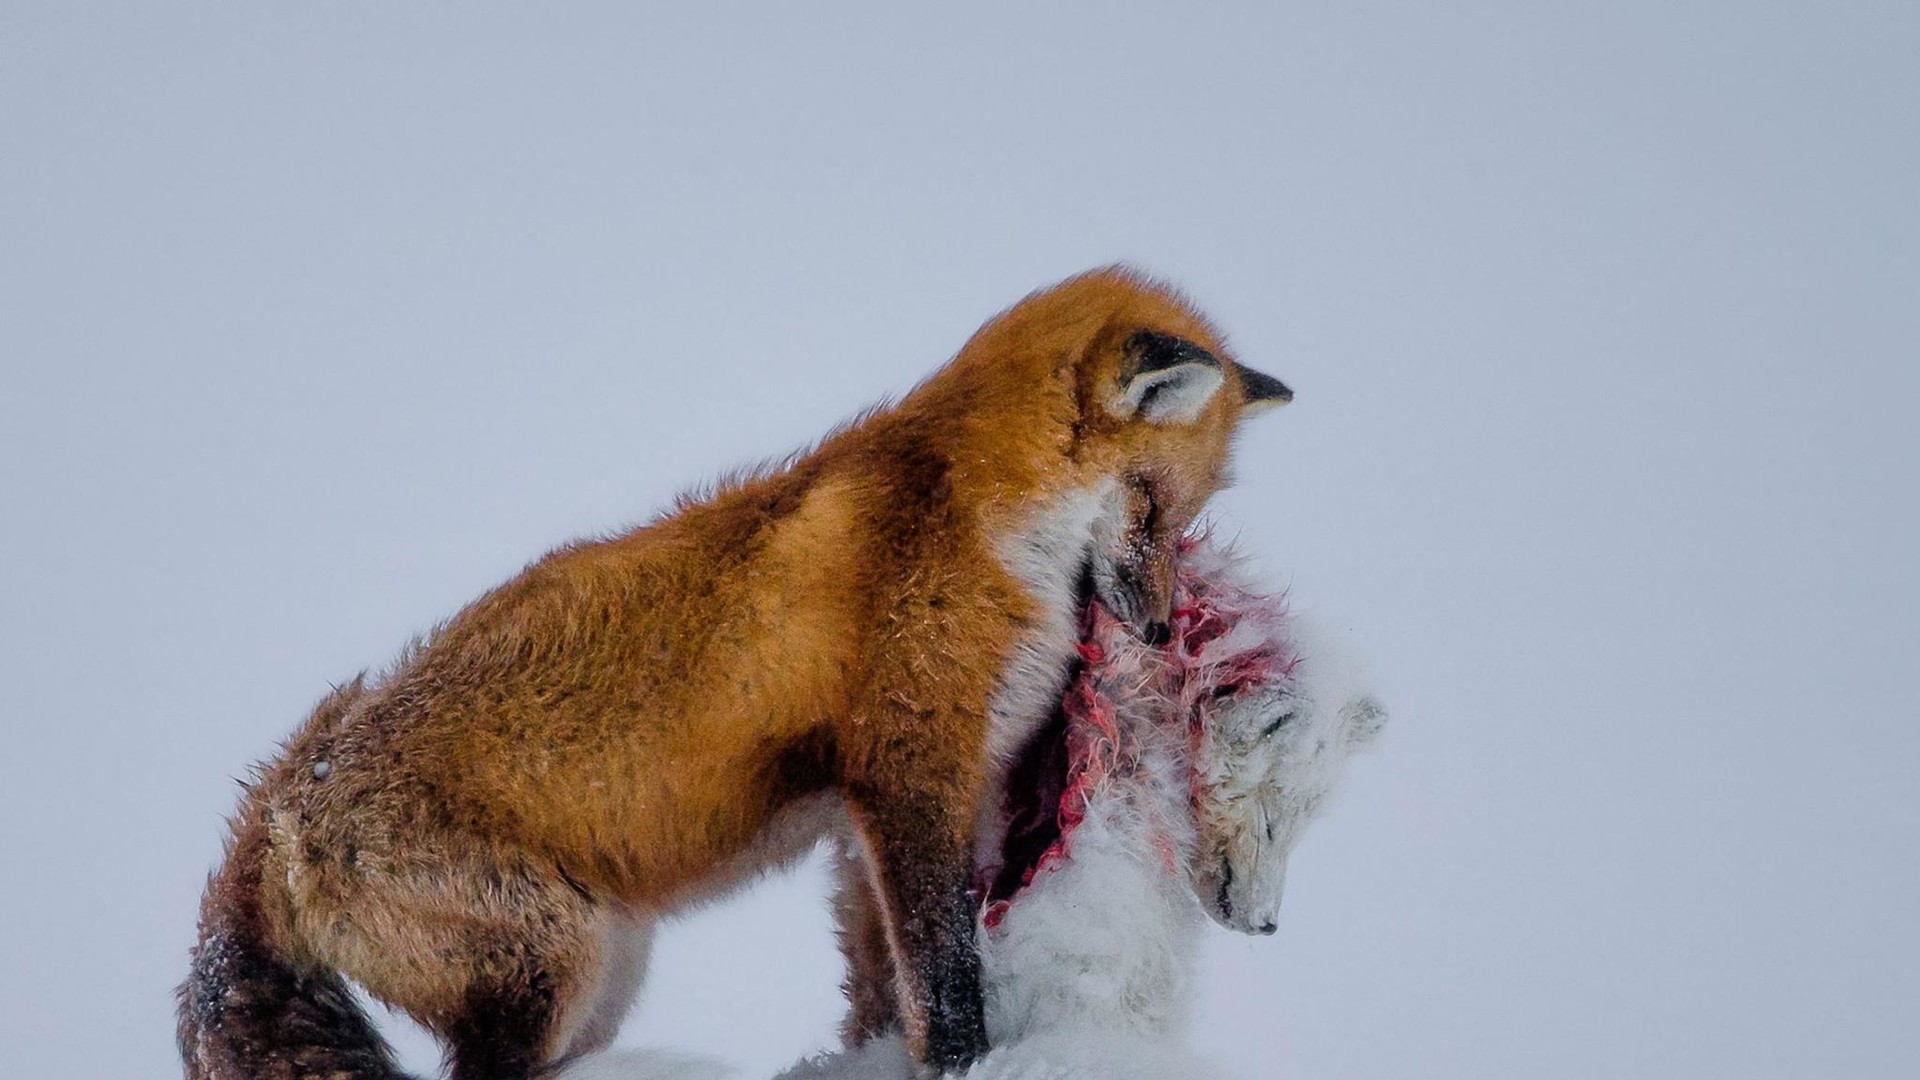 Найкраще фото конкурсу. "Історія двох лисиць". Автор Don Gutoski, Канада